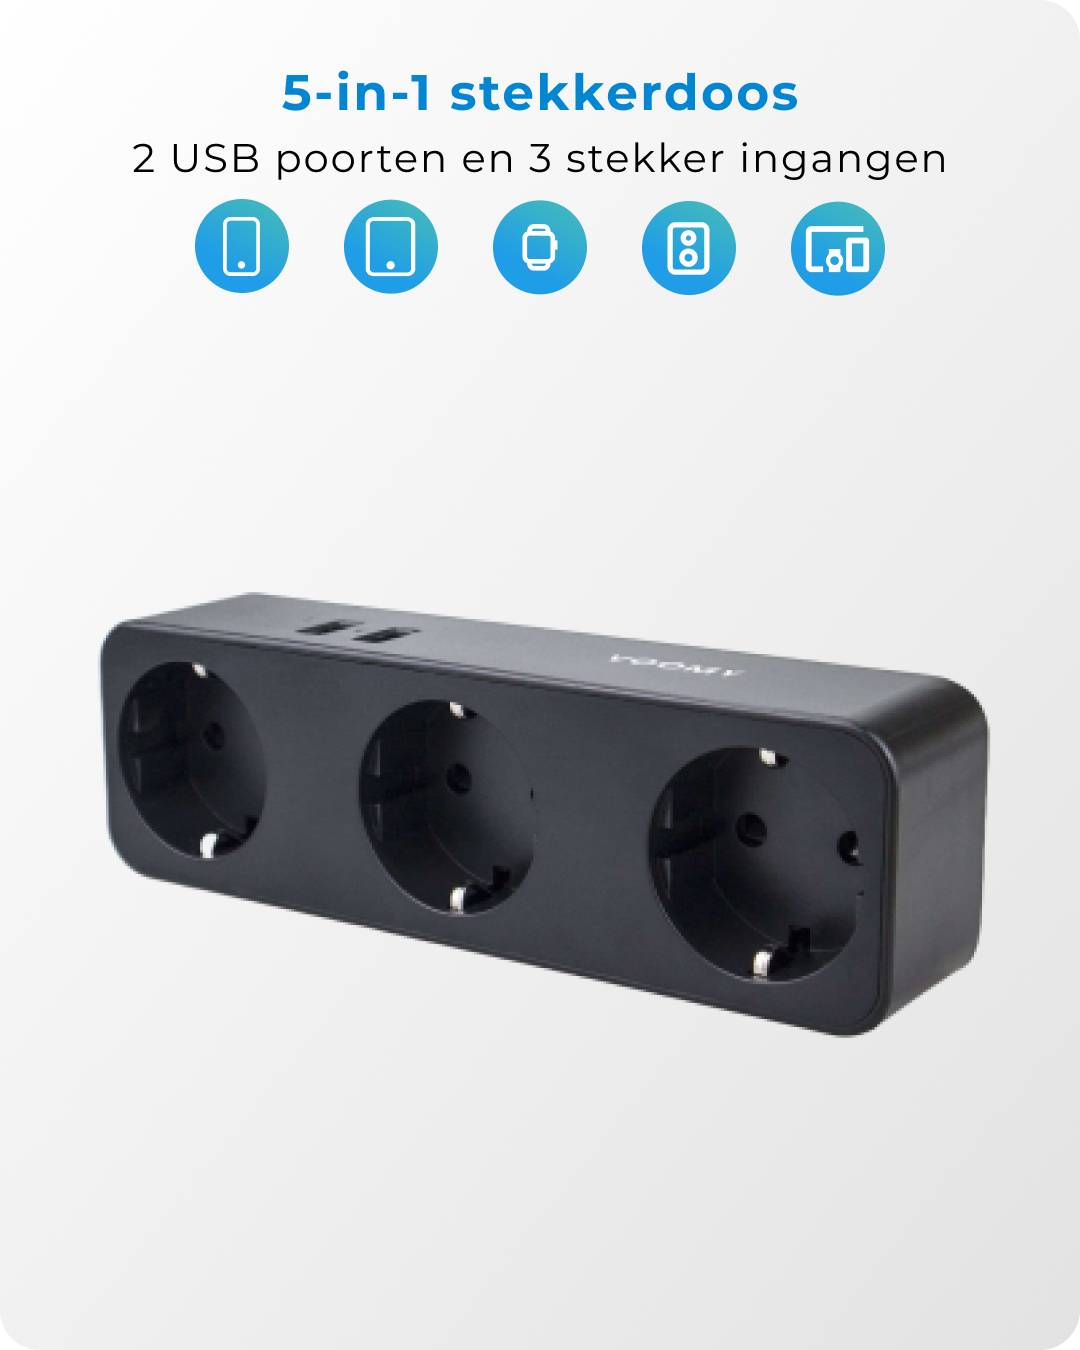 Voomy Split X3 - Verdeelstekker 2 USB-A & 3 EU - Zwart